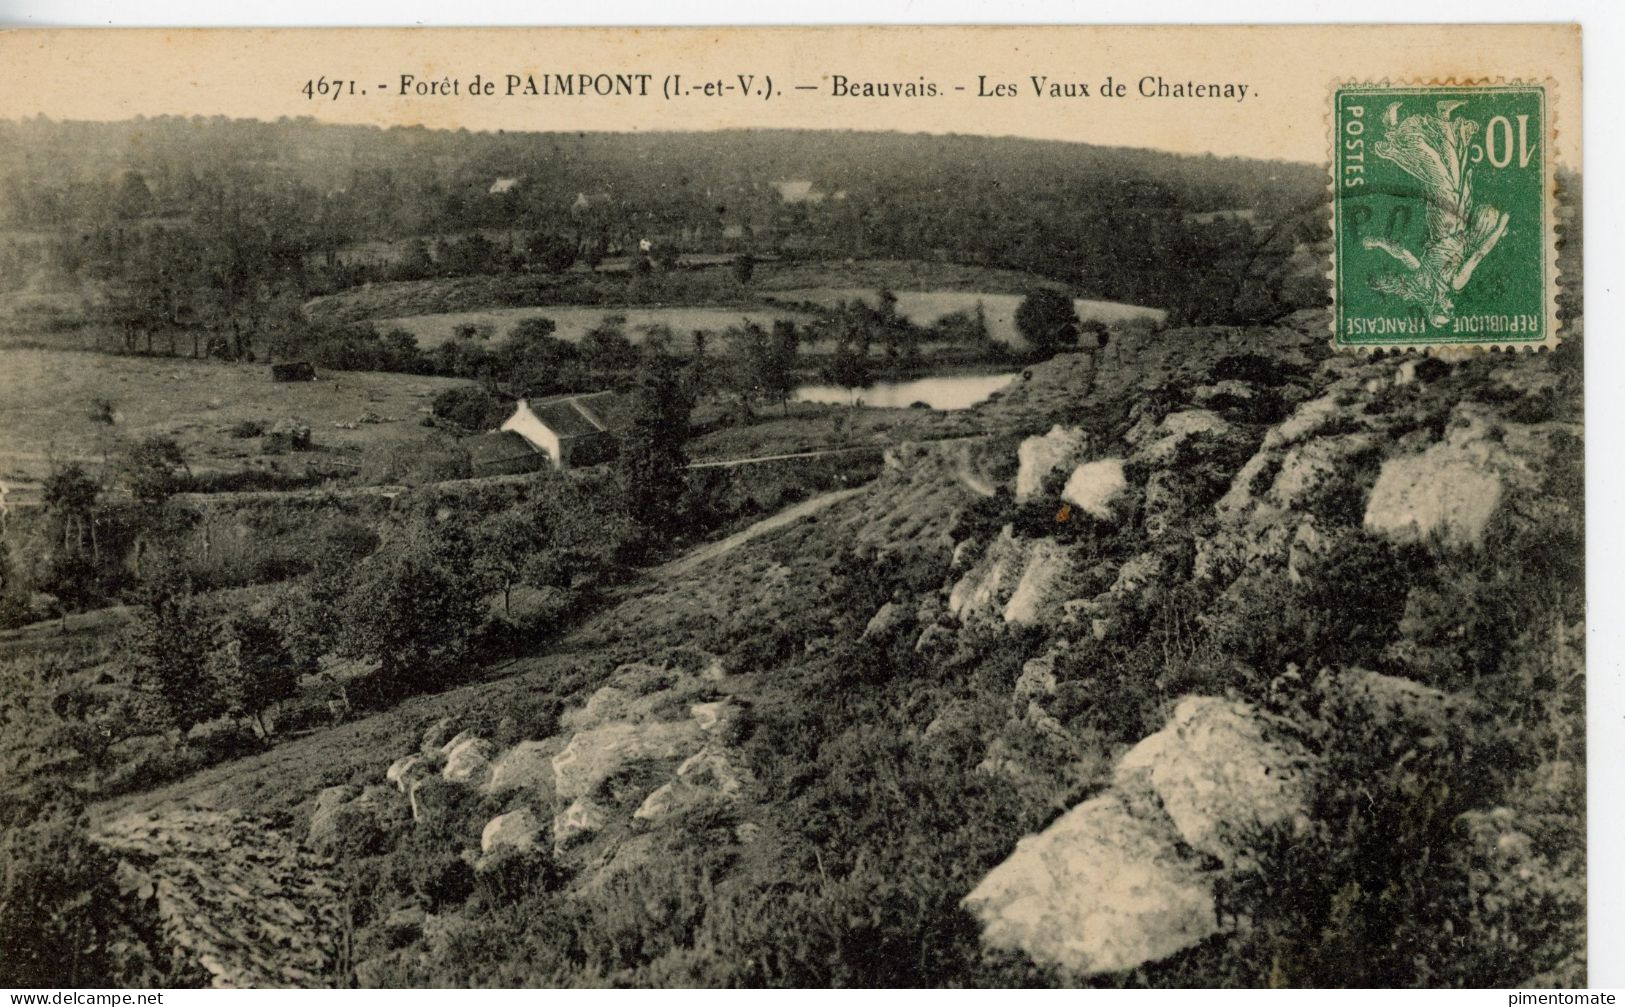 FORET DE PAIMPONT BEAUVAIS LES VAUX DE CHATENAY 1922 - Paimpont